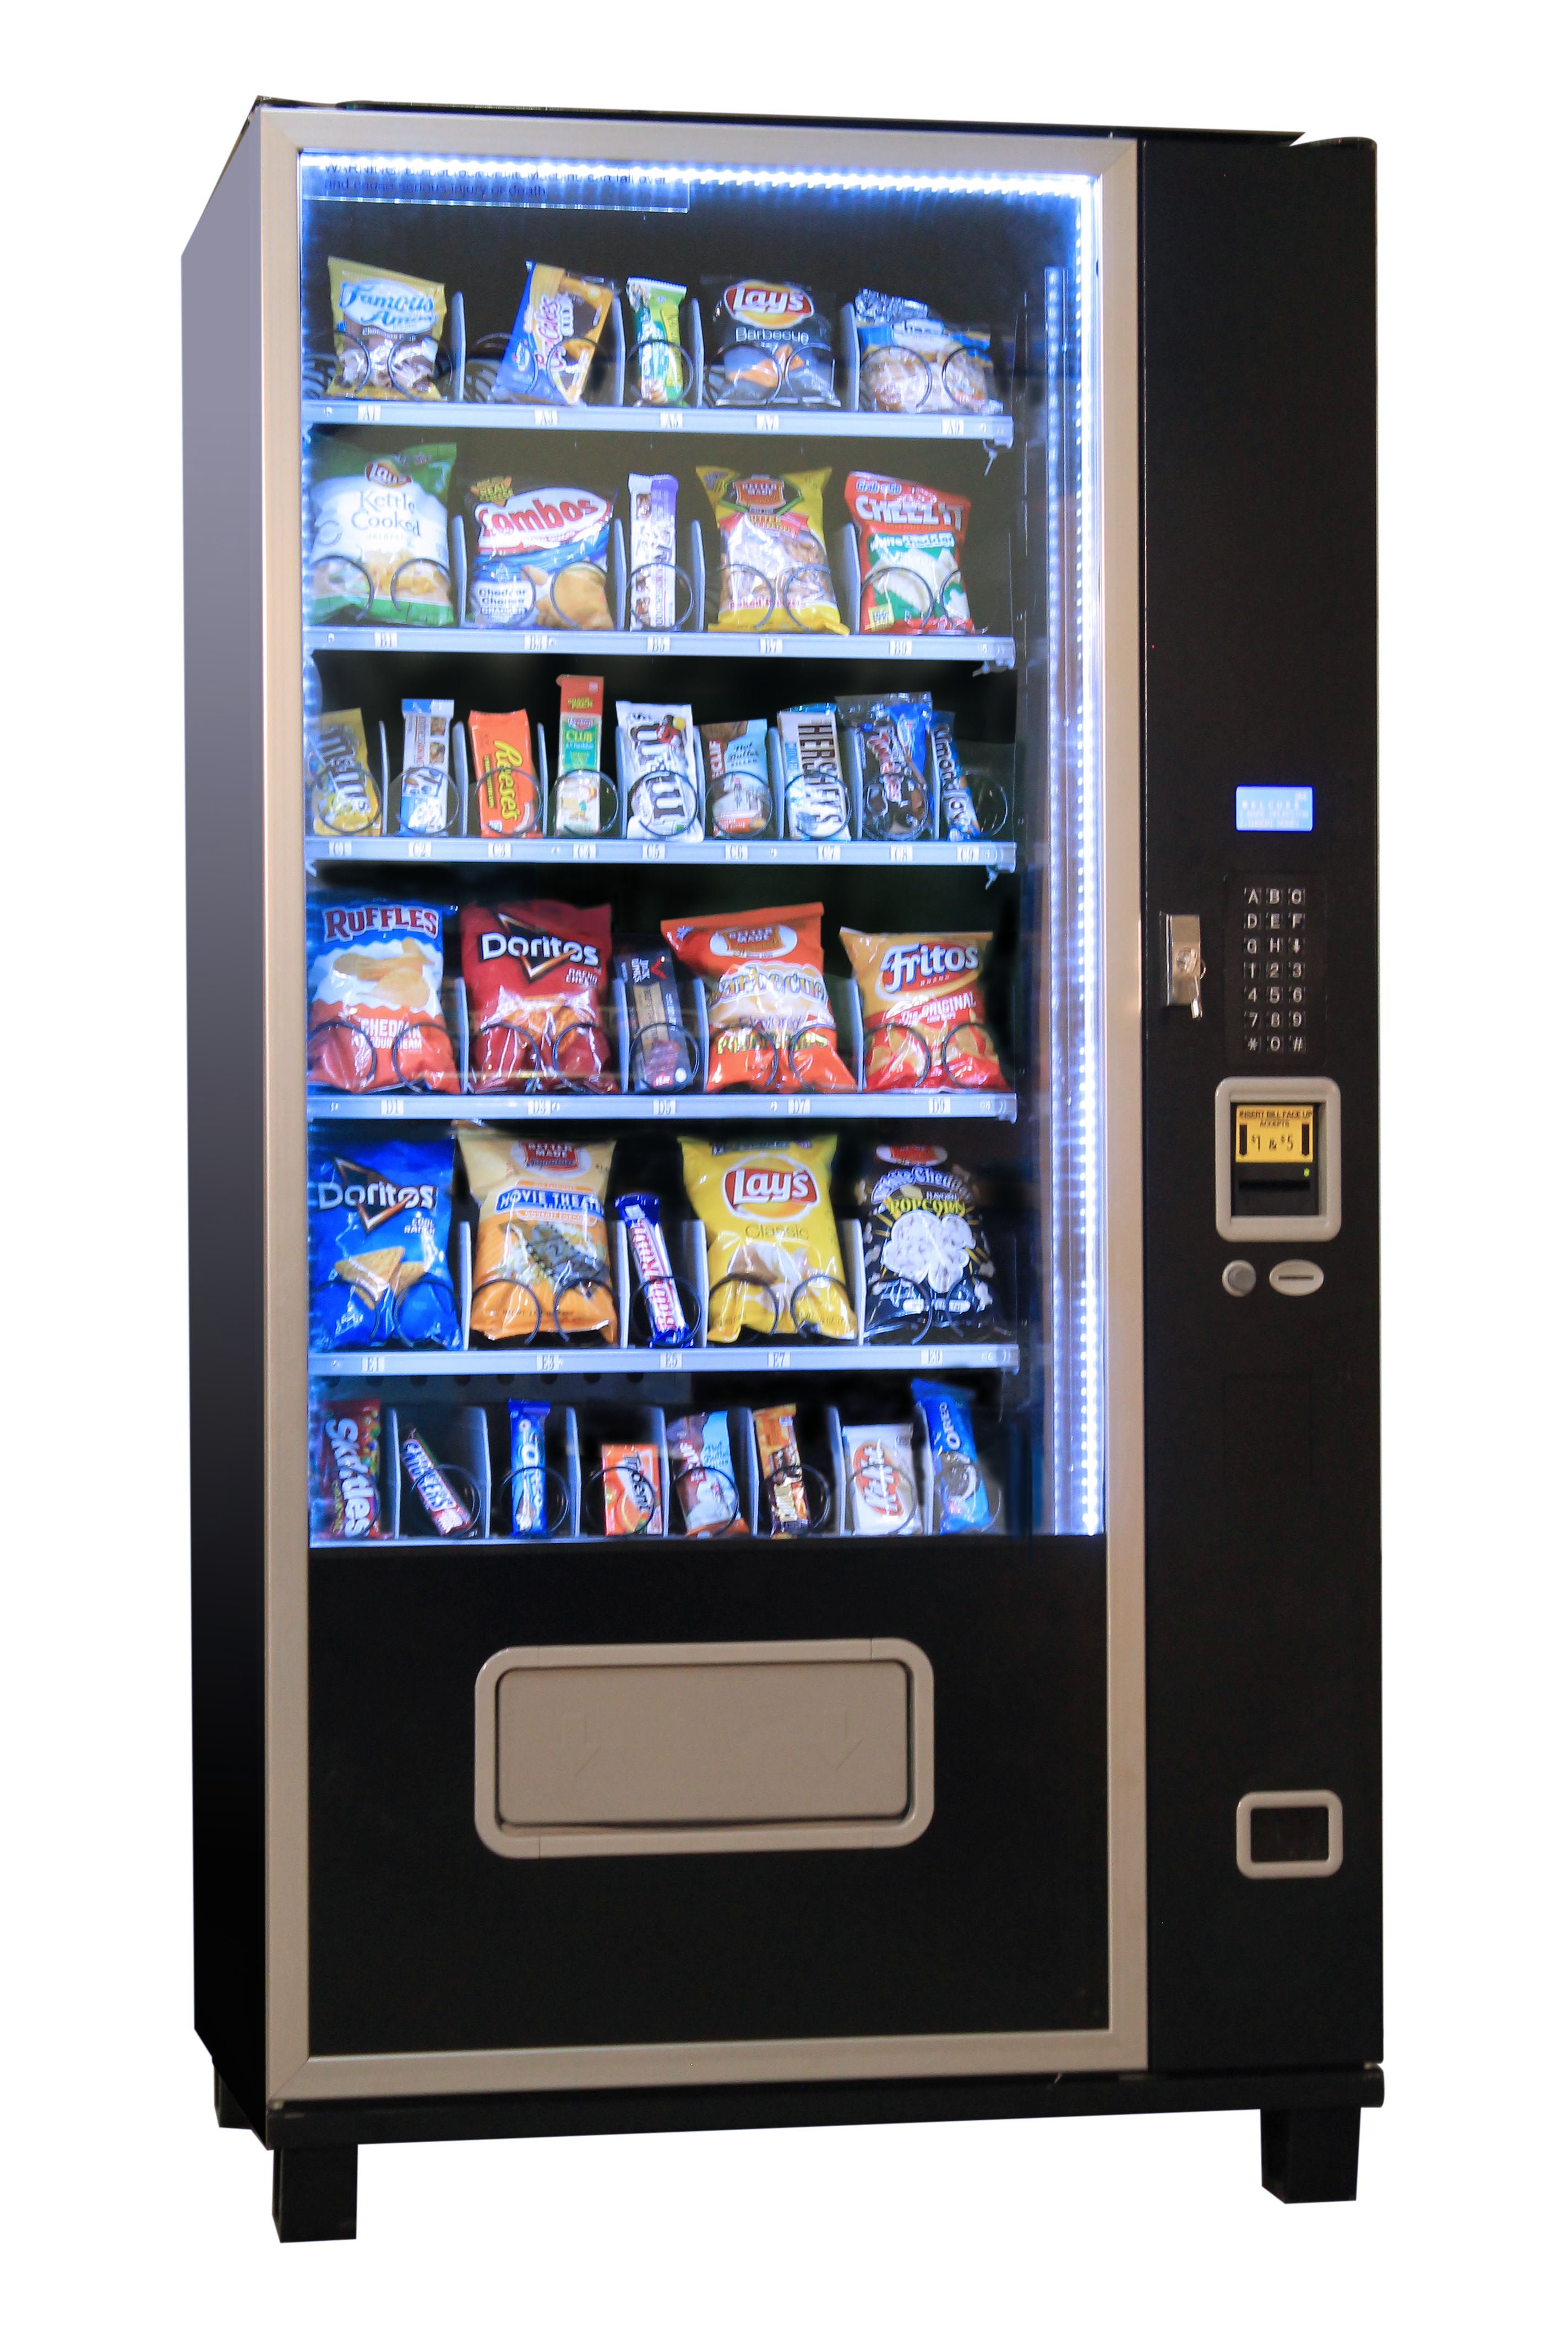 Piranha G638 Snack Vending Machine